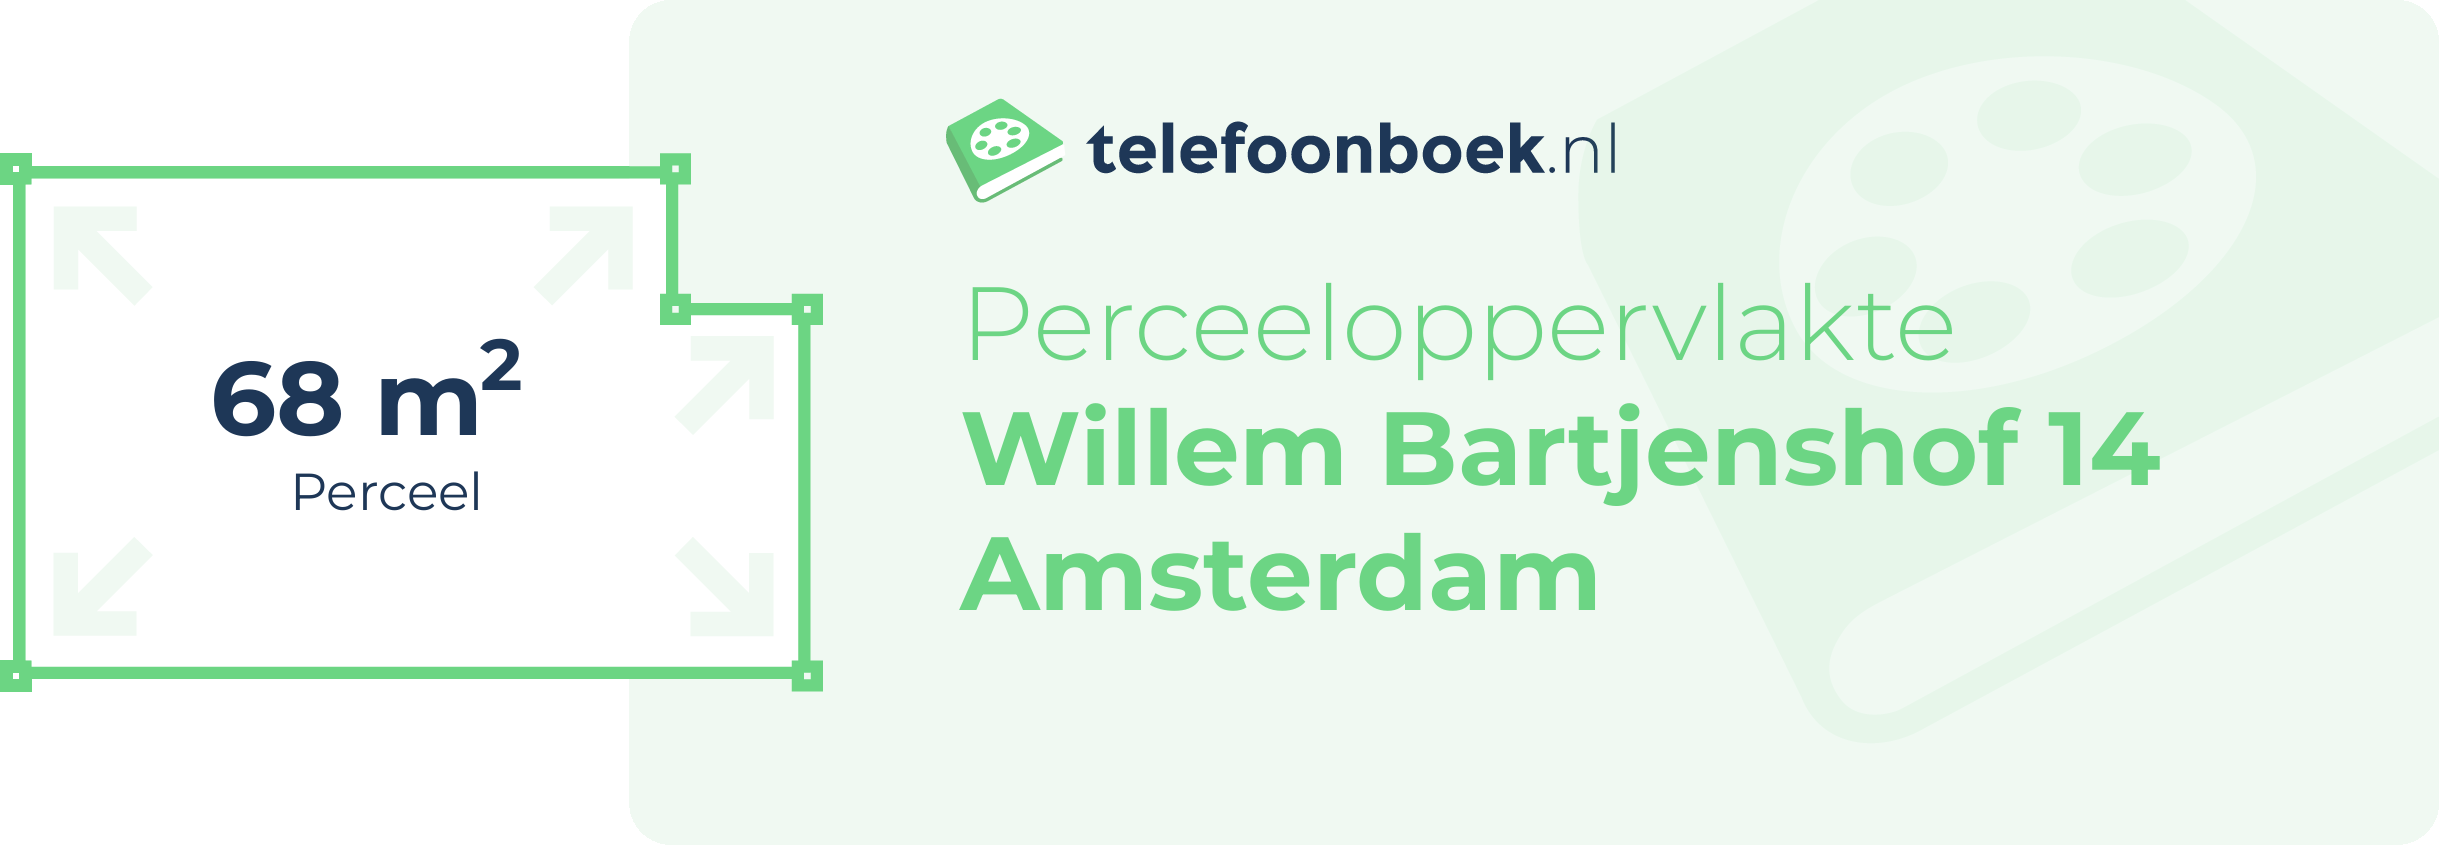 Perceeloppervlakte Willem Bartjenshof 14 Amsterdam